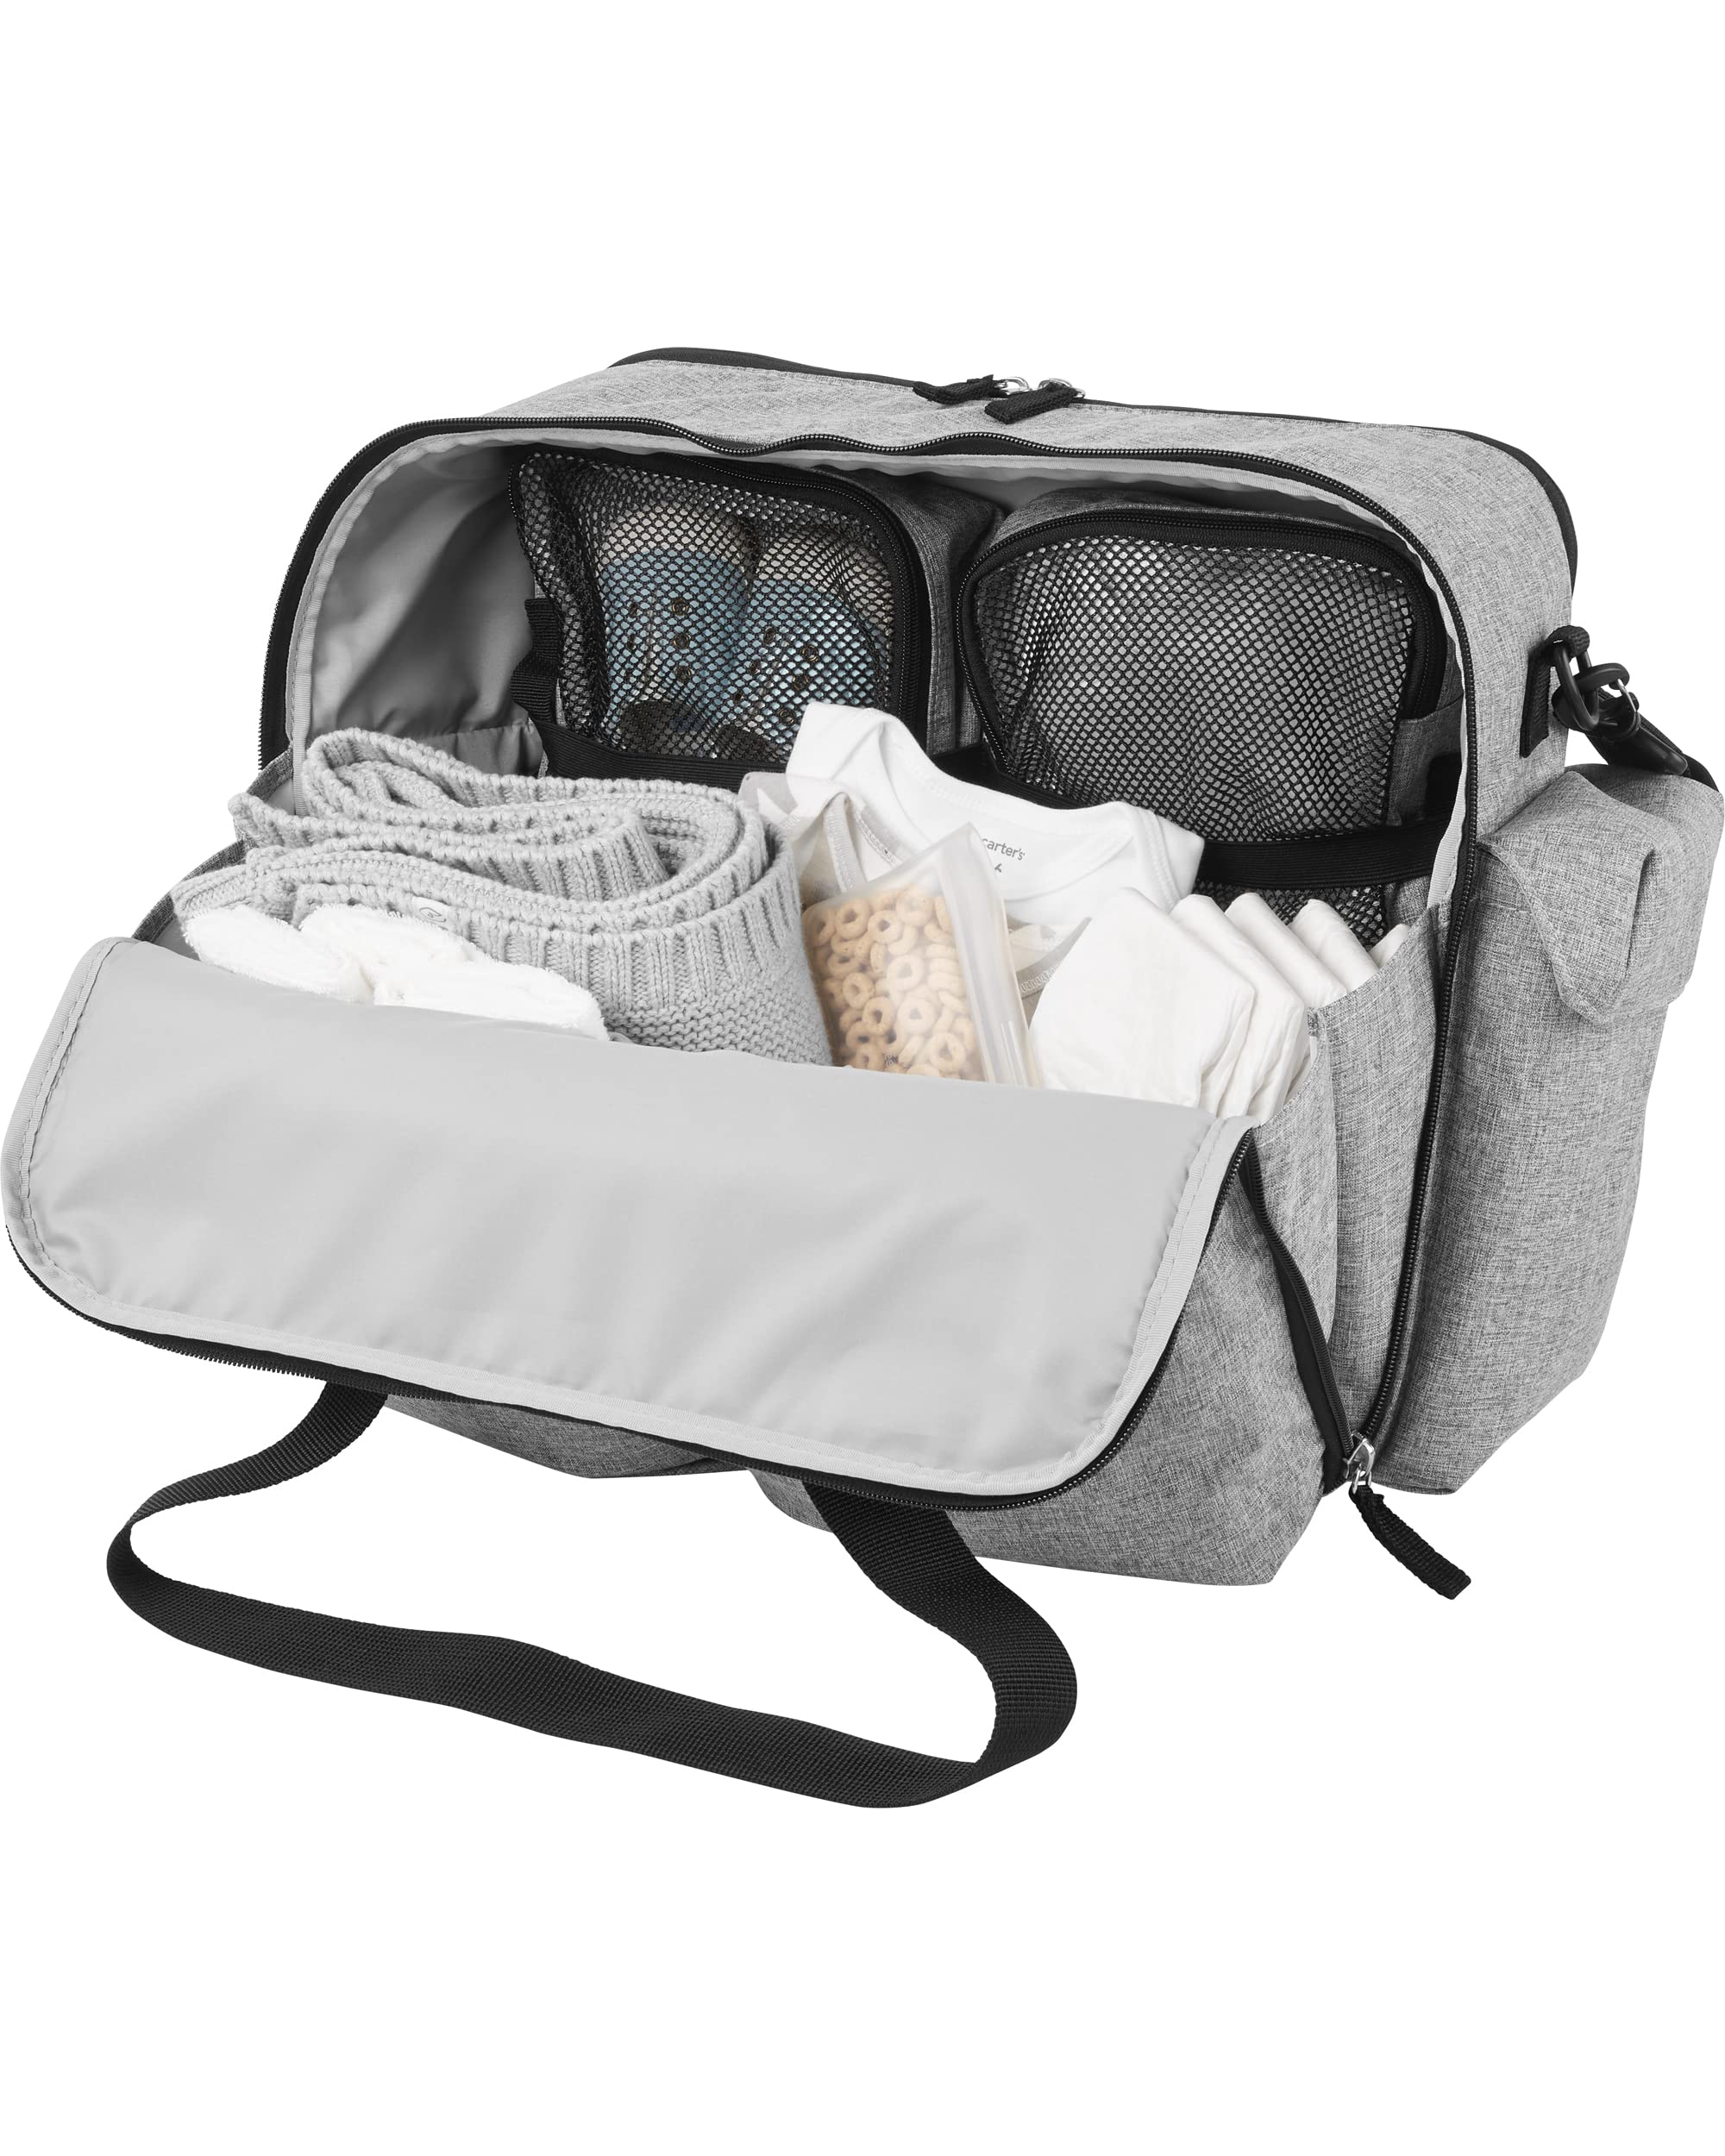 Skip Hop Weekender Overnight Bag and Travel Duffel Diaper Bag, Endless Weekender